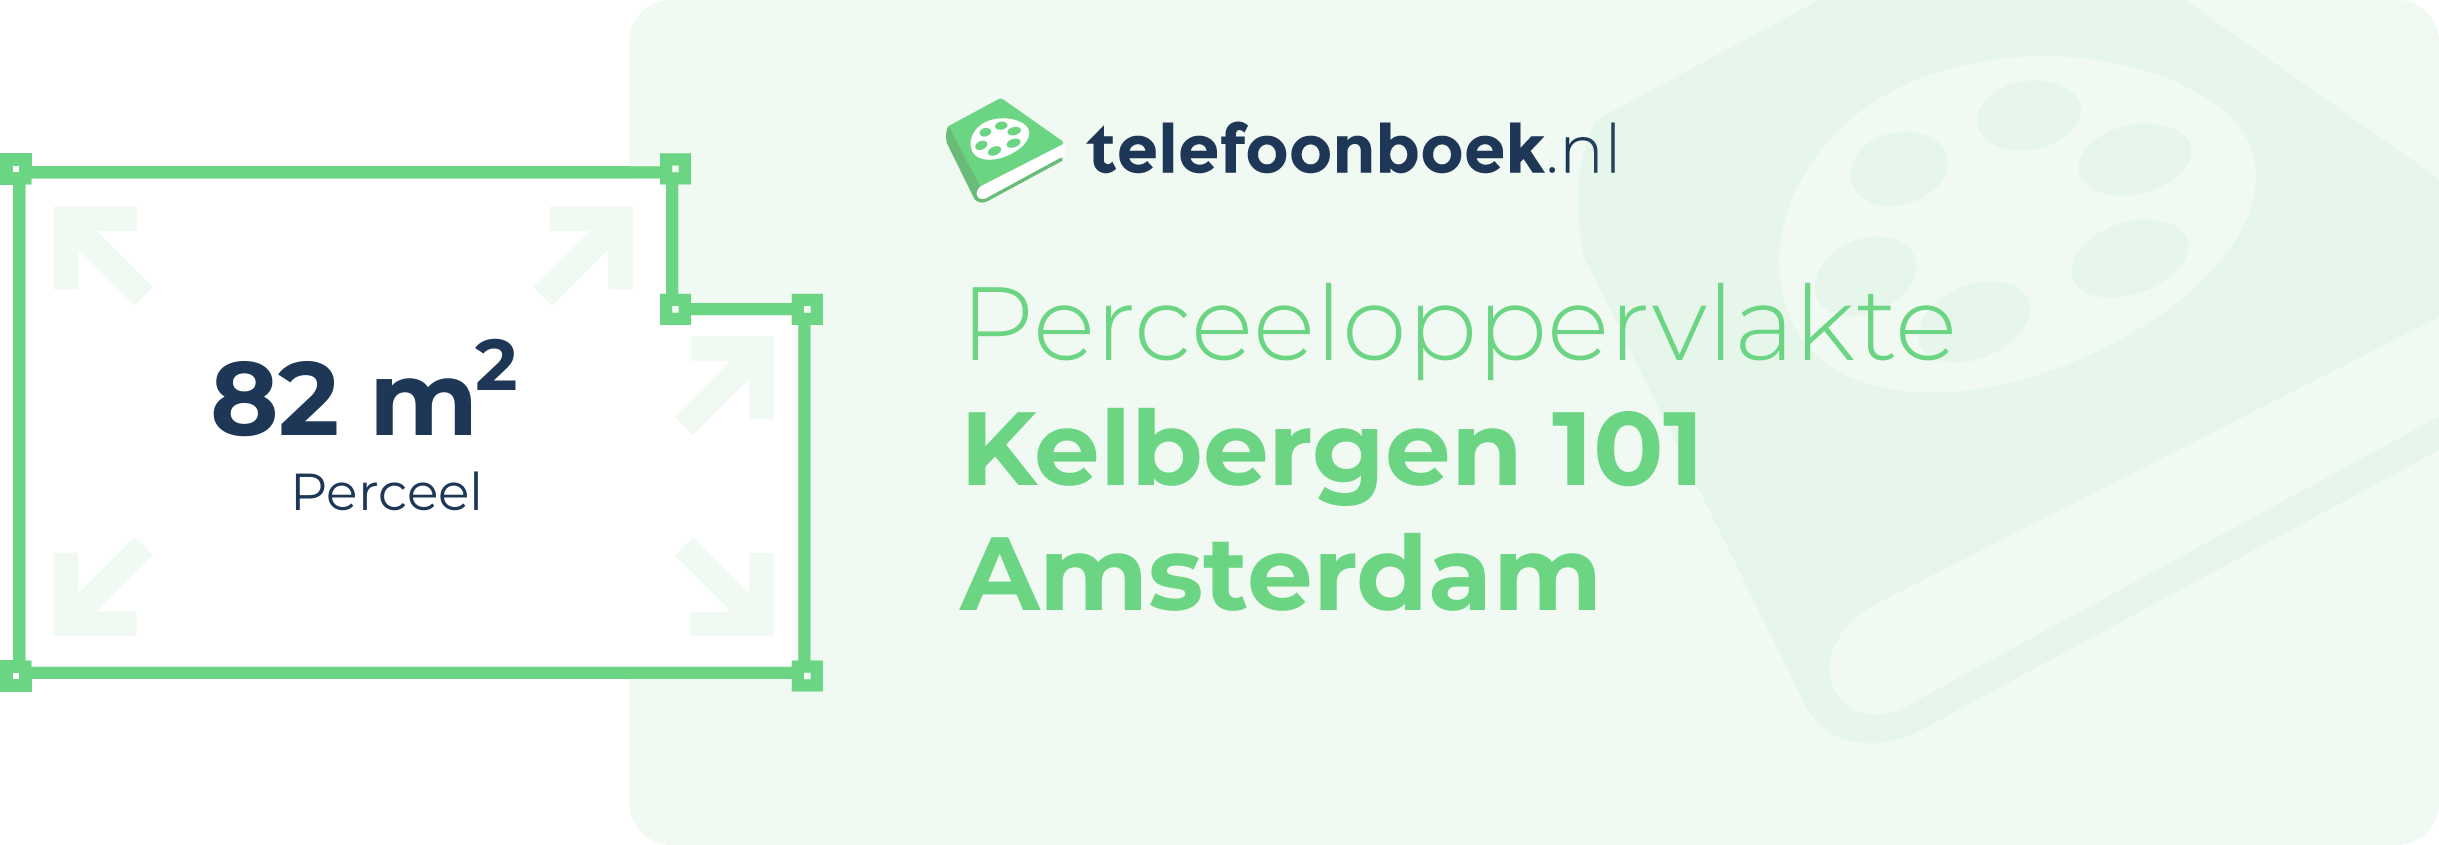 Perceeloppervlakte Kelbergen 101 Amsterdam